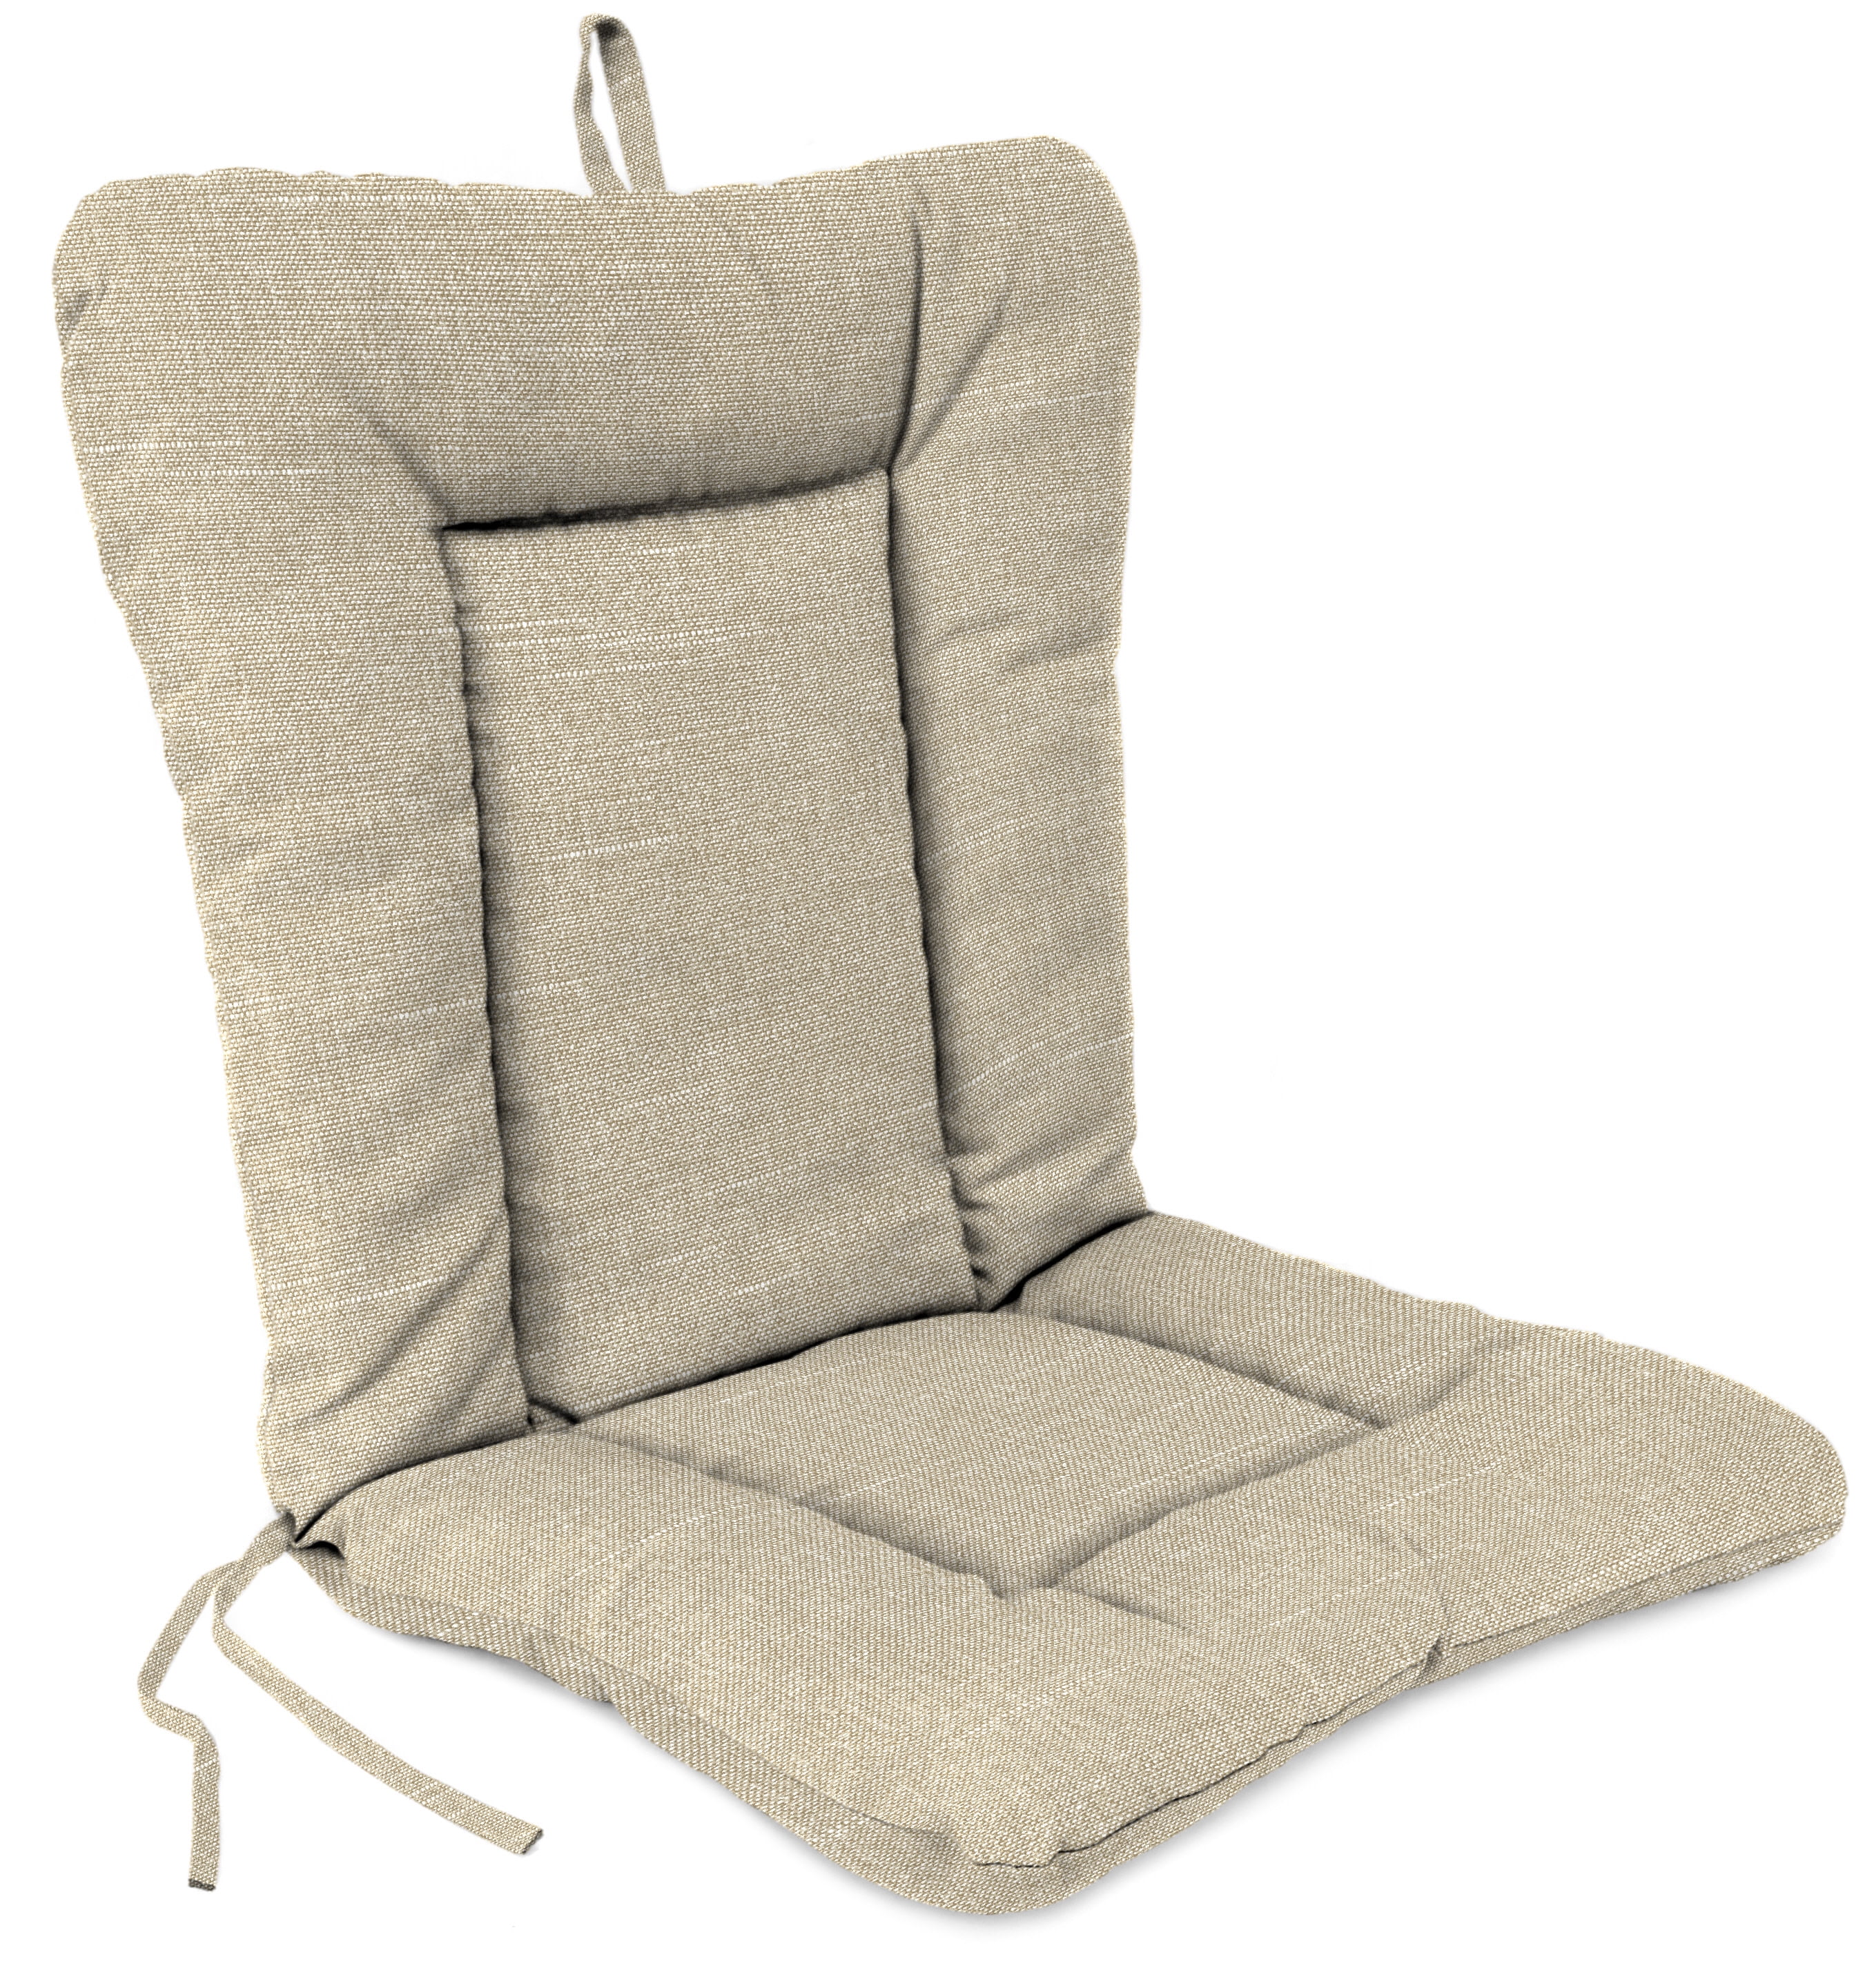 Outdoor Chair Cushions - Walmart.com